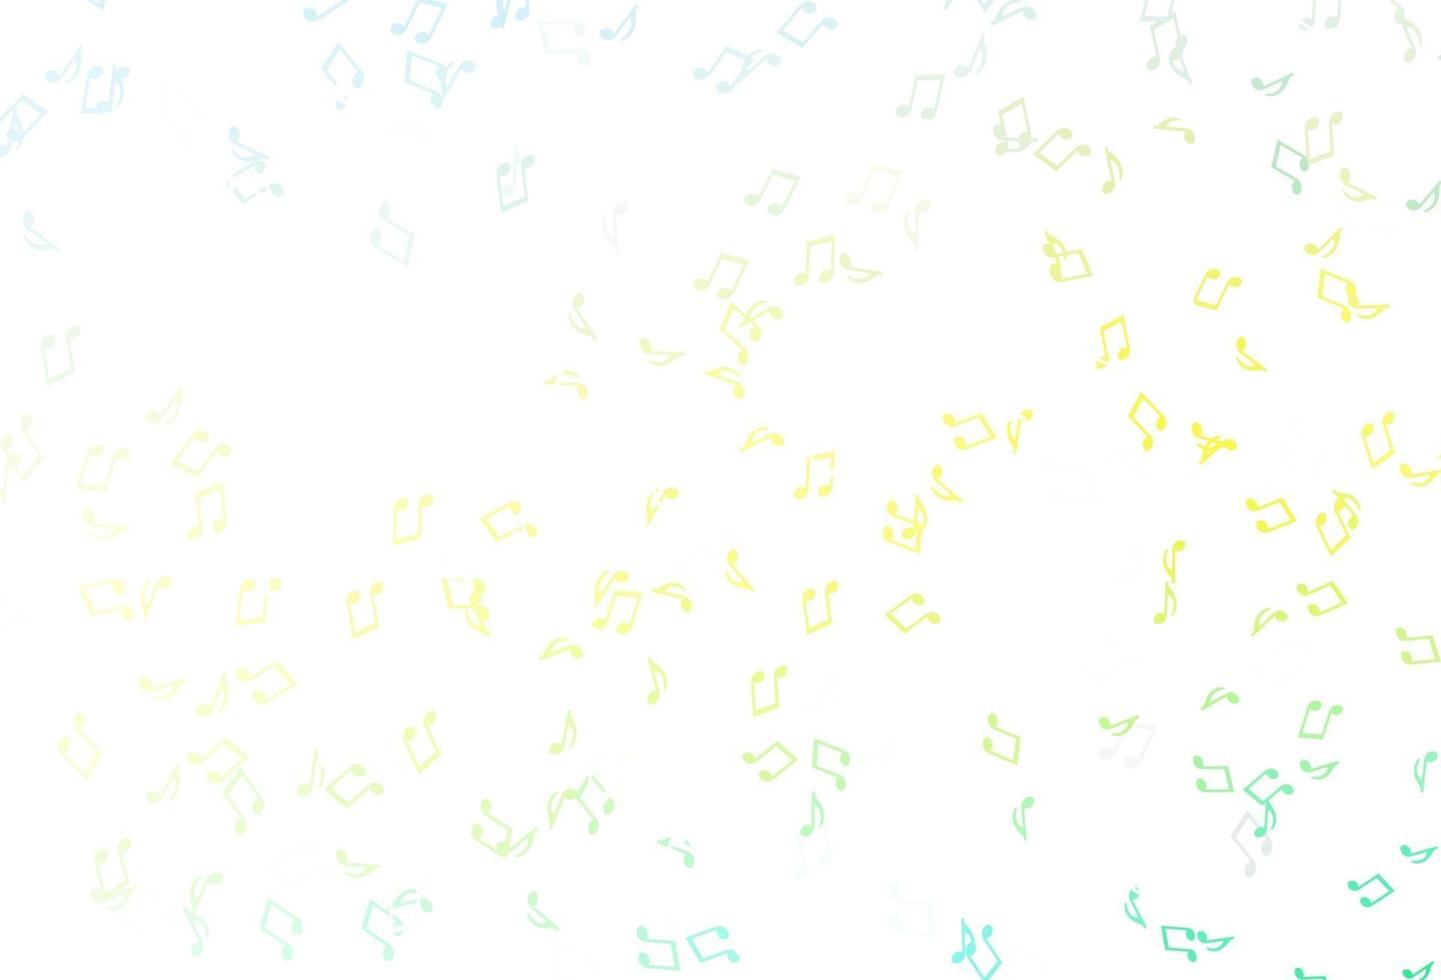 textura de vetor verde e amarelo claro com notas musicais.